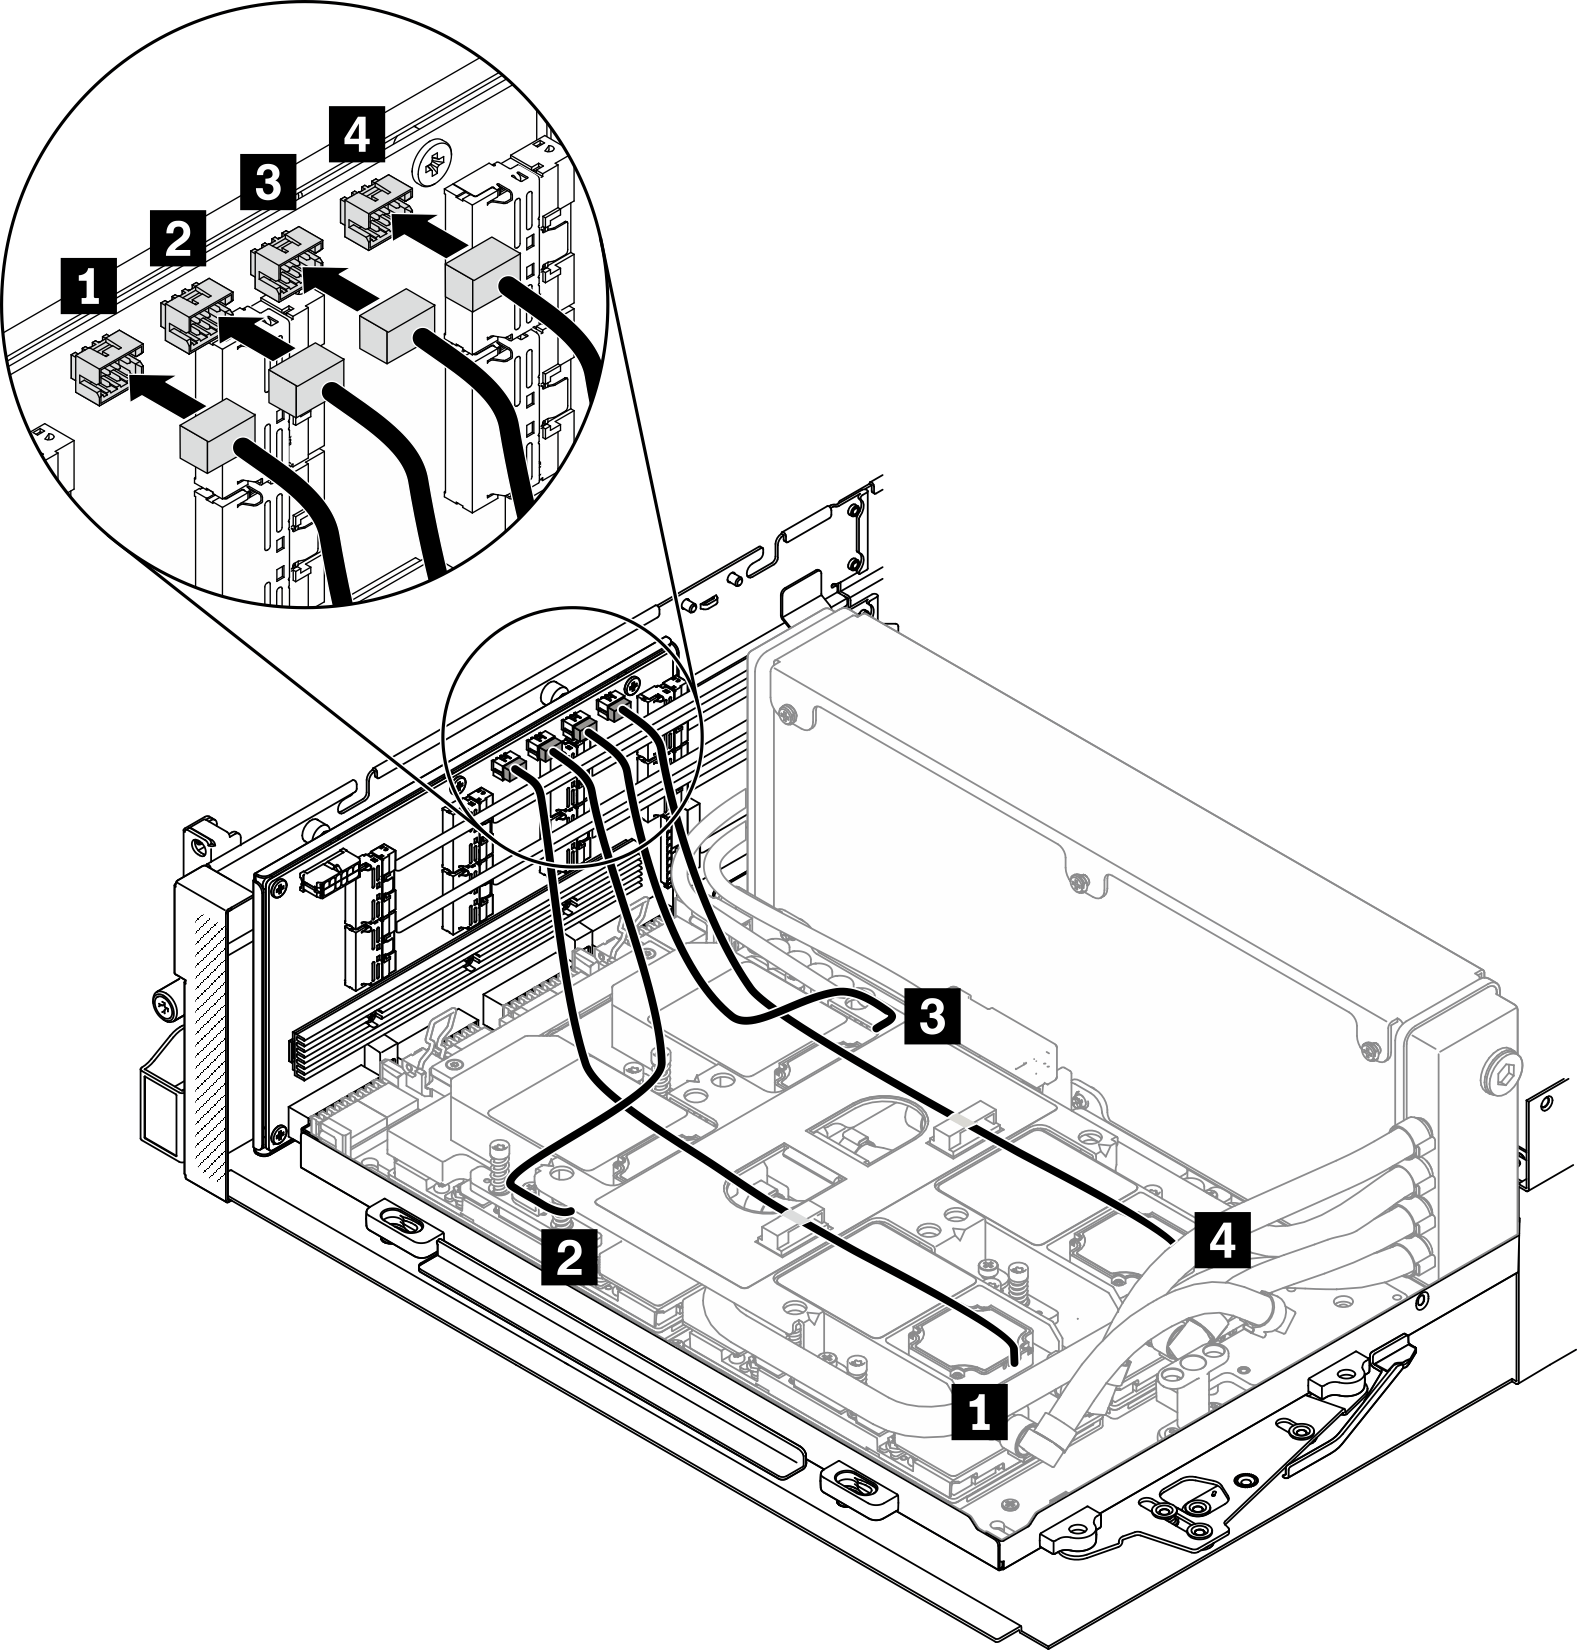 Connecting conjunto de placa de frío pump cables to the conjunto de retemporizador